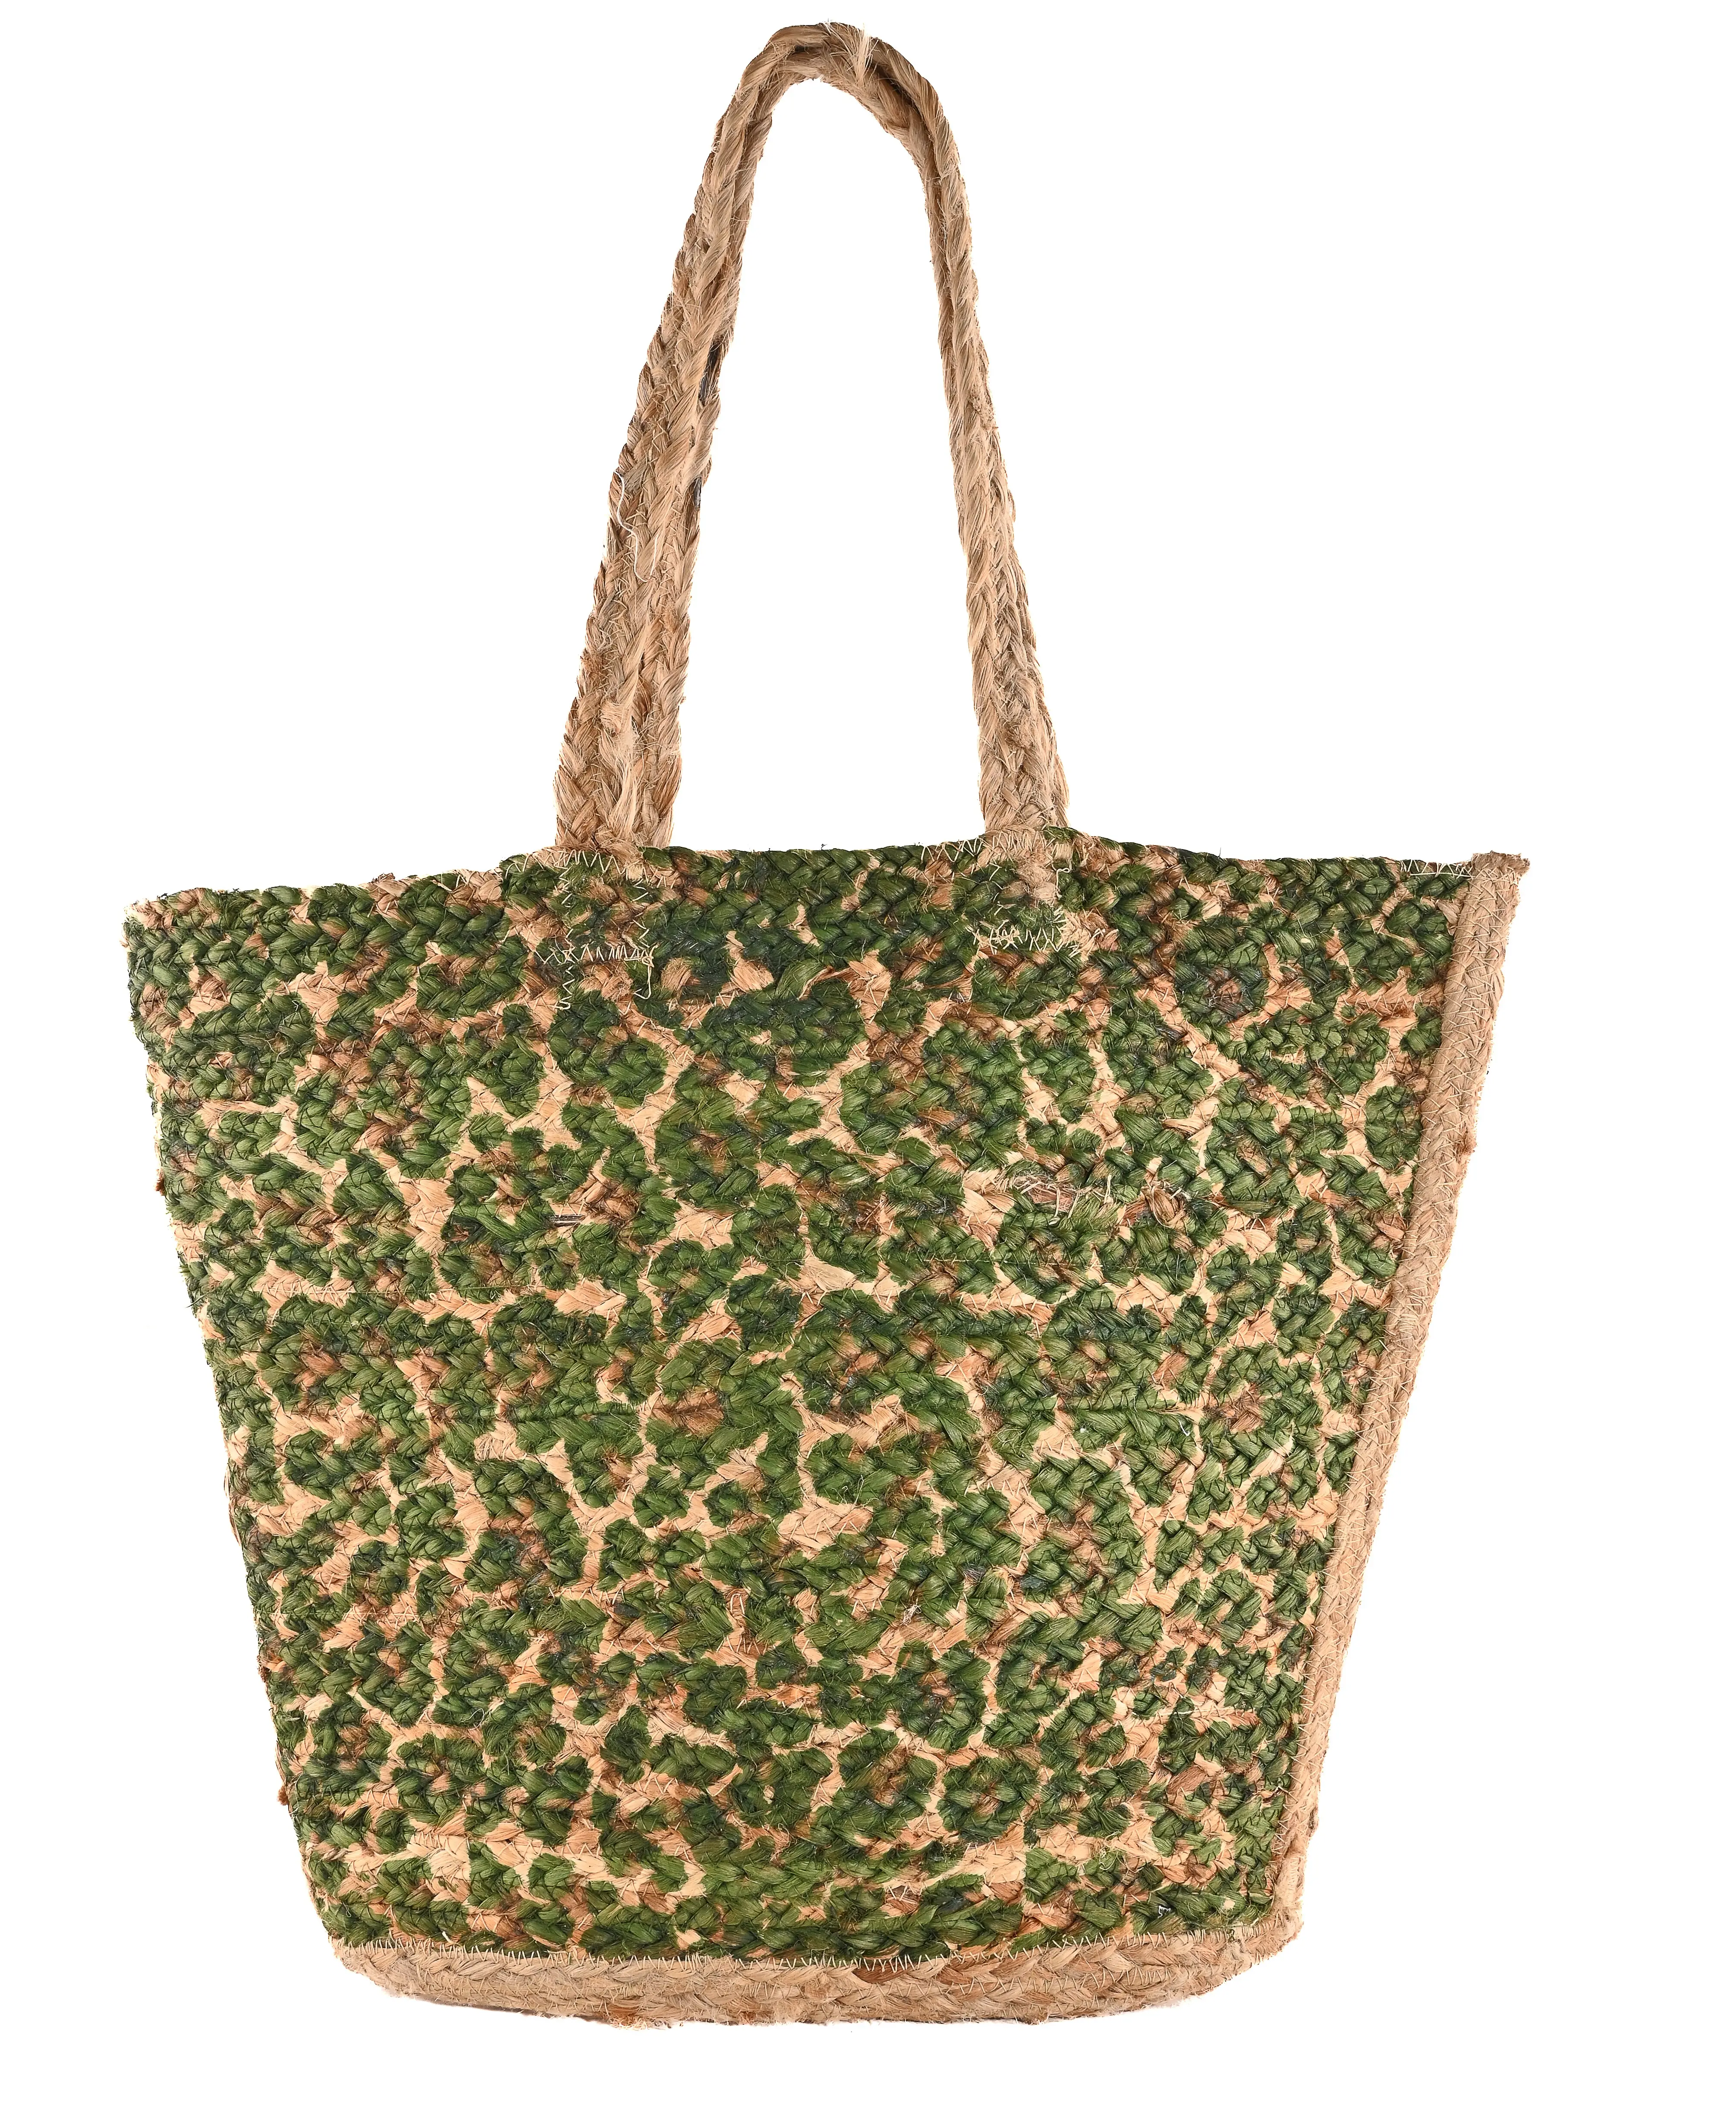 Bolsa de praia de juta natural feita à mão com estampa floral verde, bolsa de mão de juta para festas e praia, ideal para uso em grandes lojas